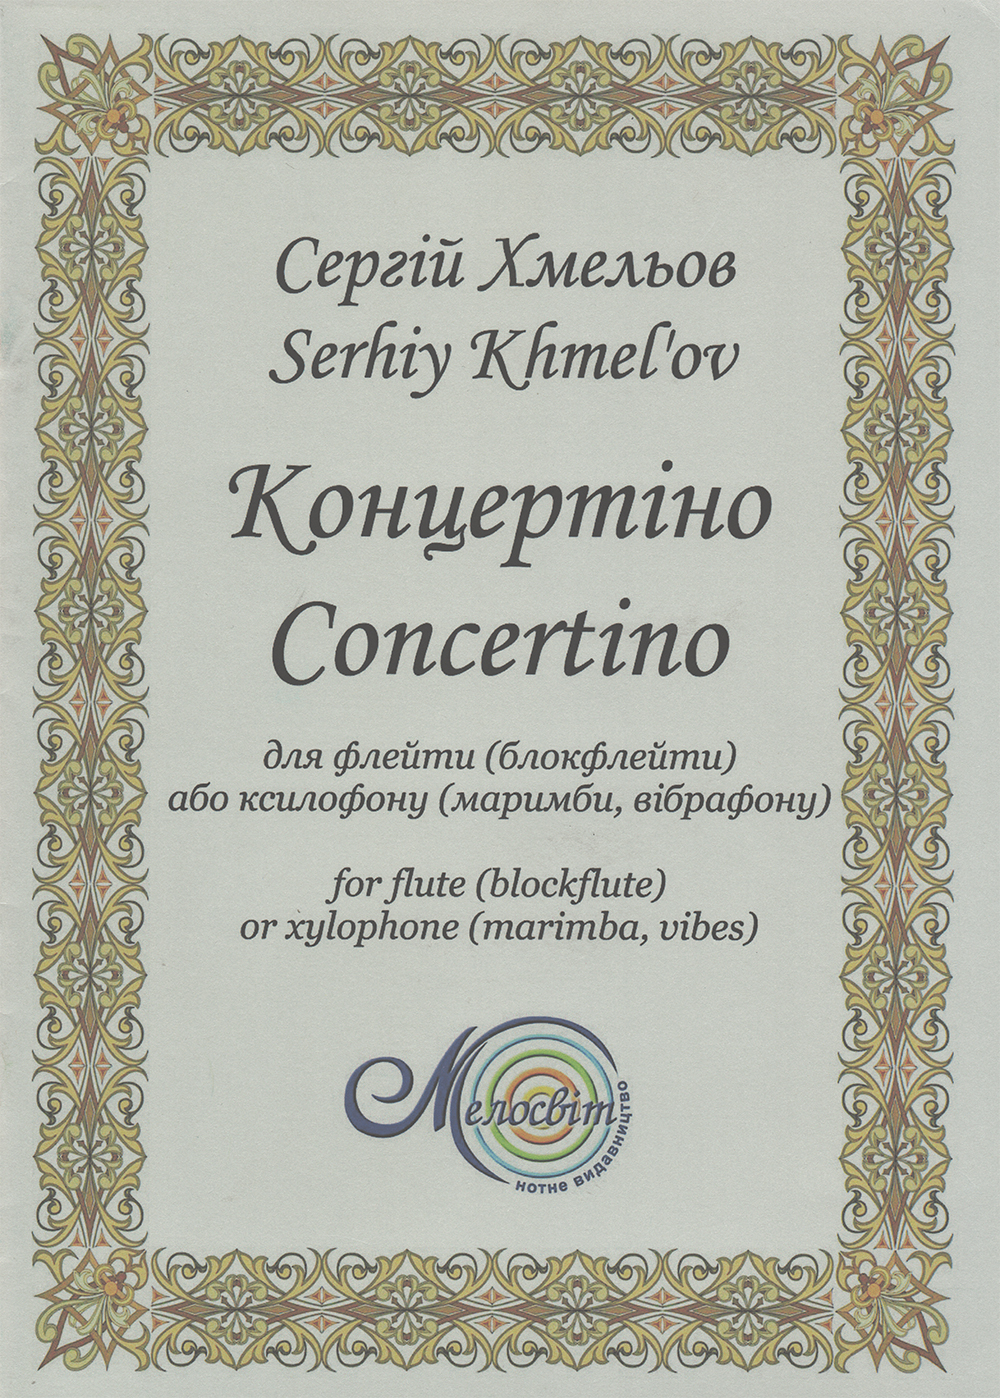 Ноты Концертіно для флейти (блокфлейти) або ксилофону (маримби, вібрафону)